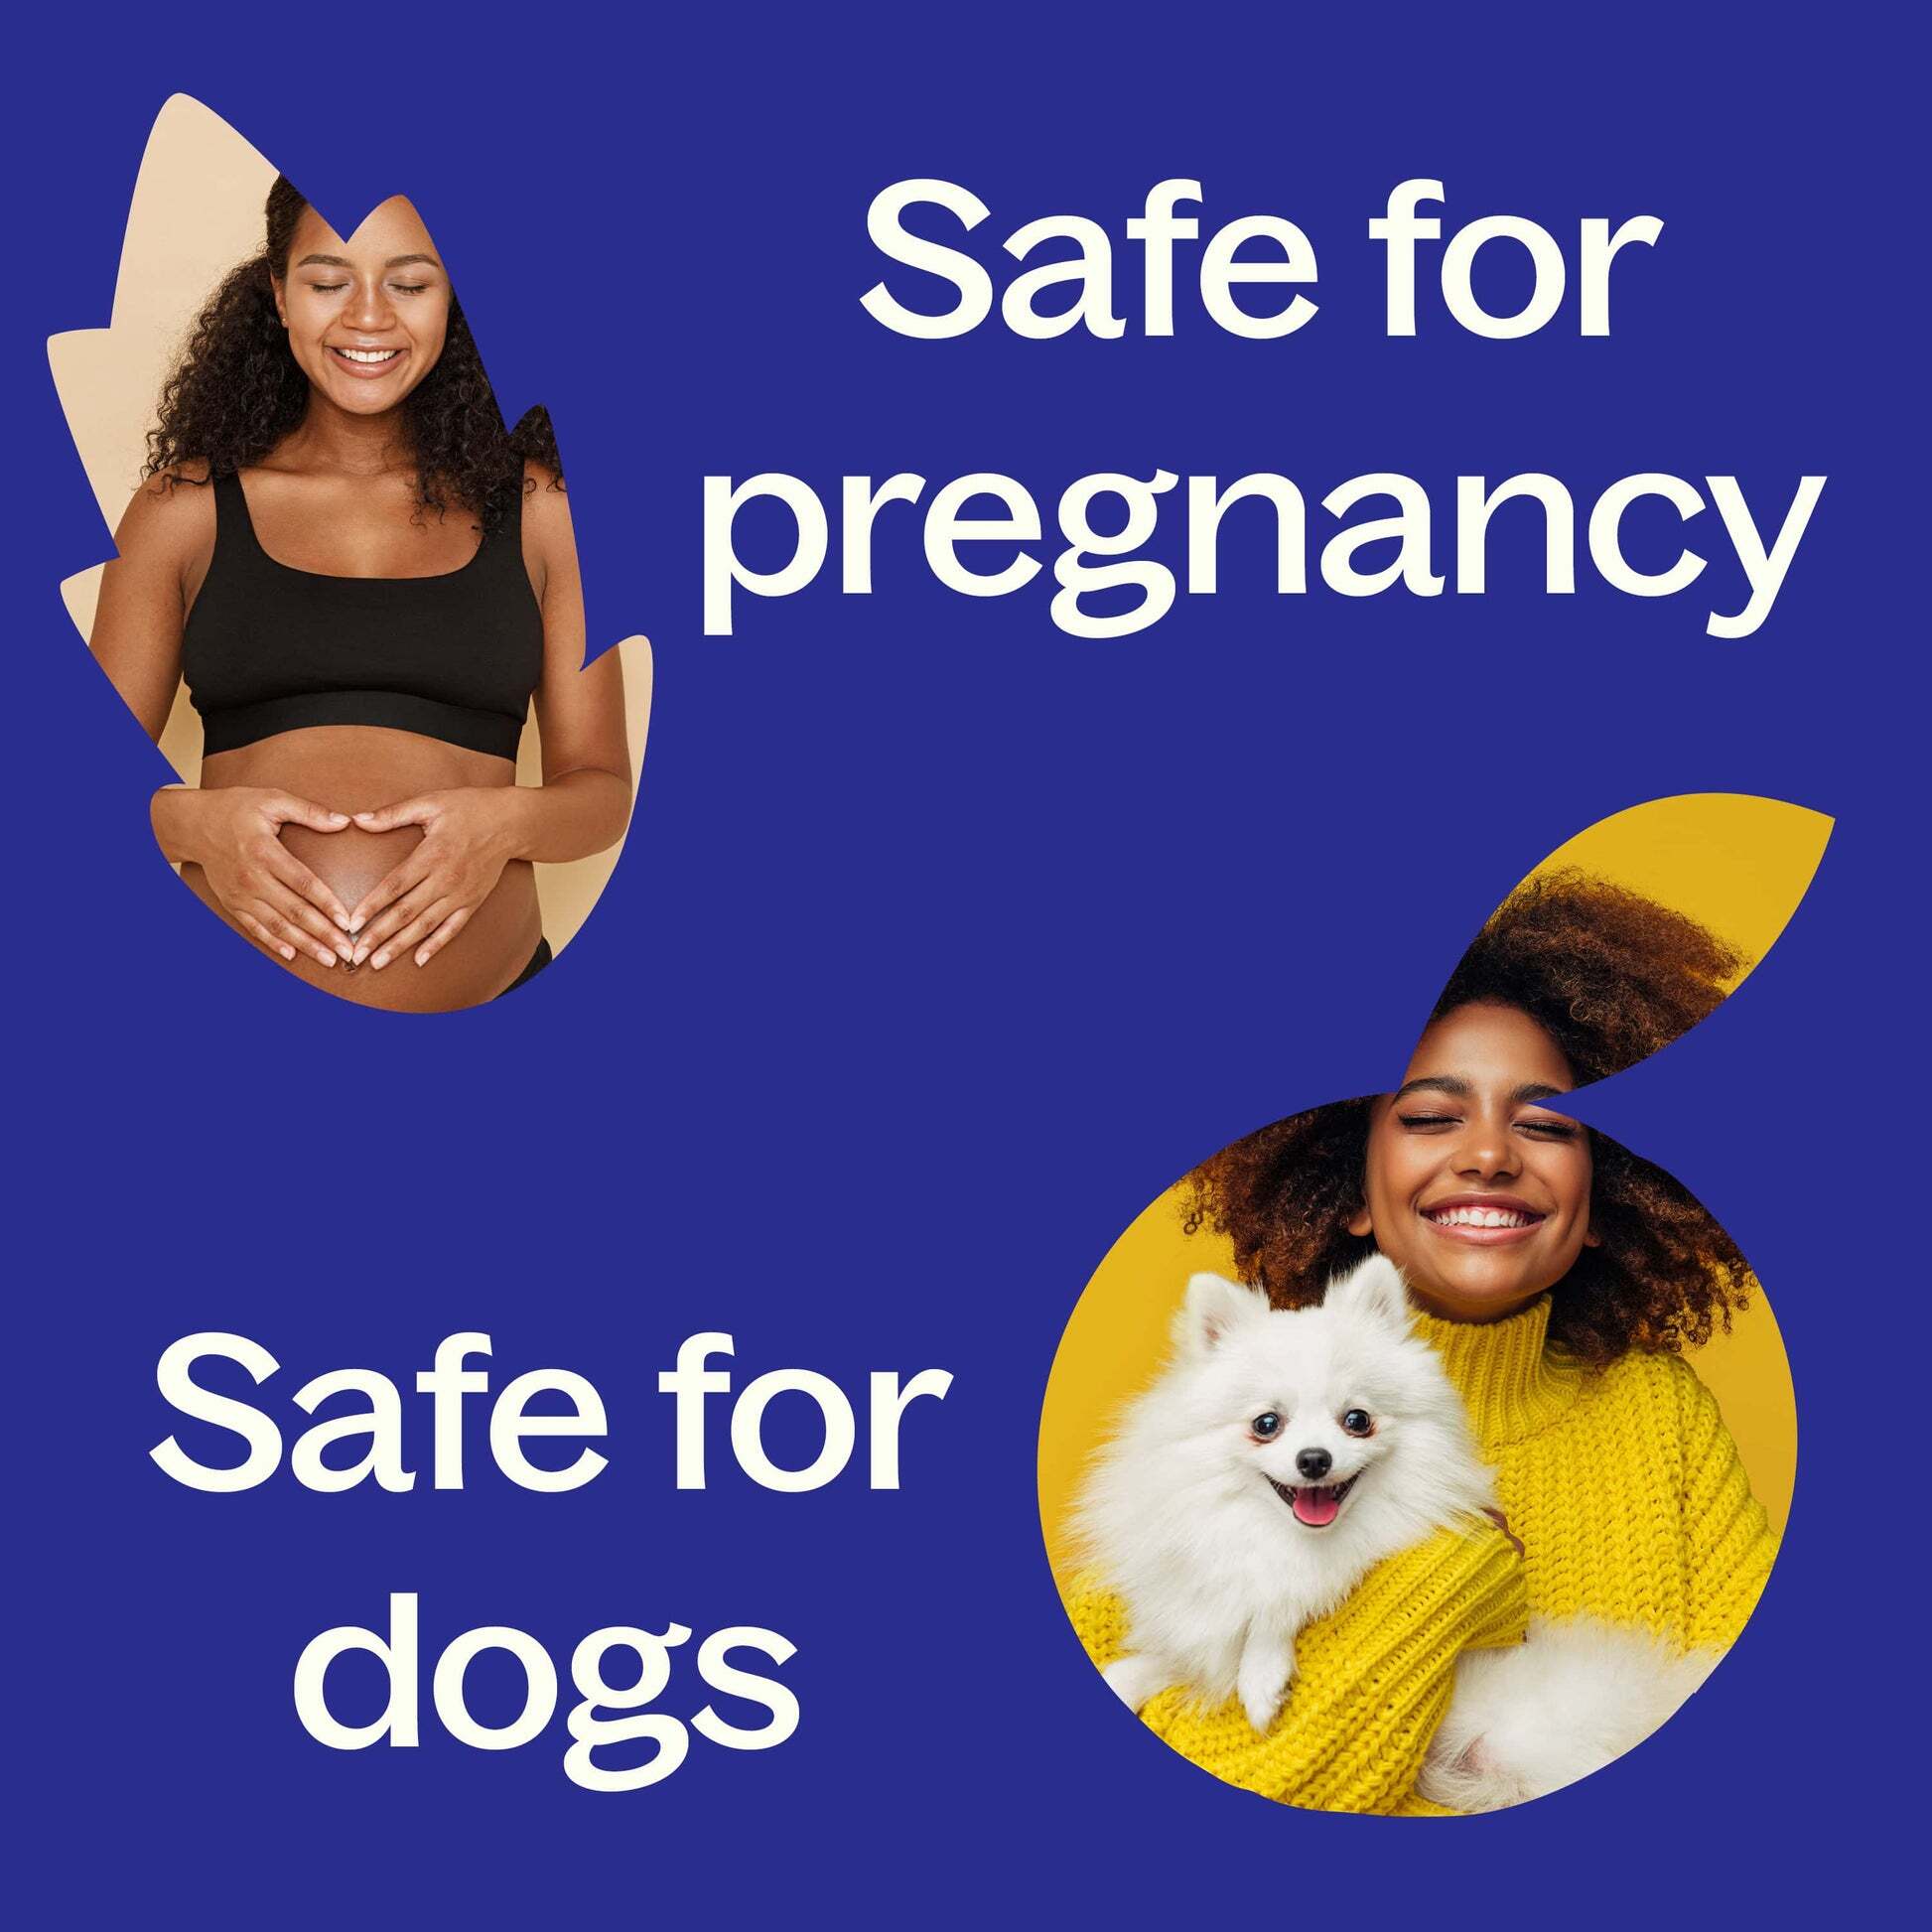 Safety-Pregnancy_Dogs_1_-min_1946x